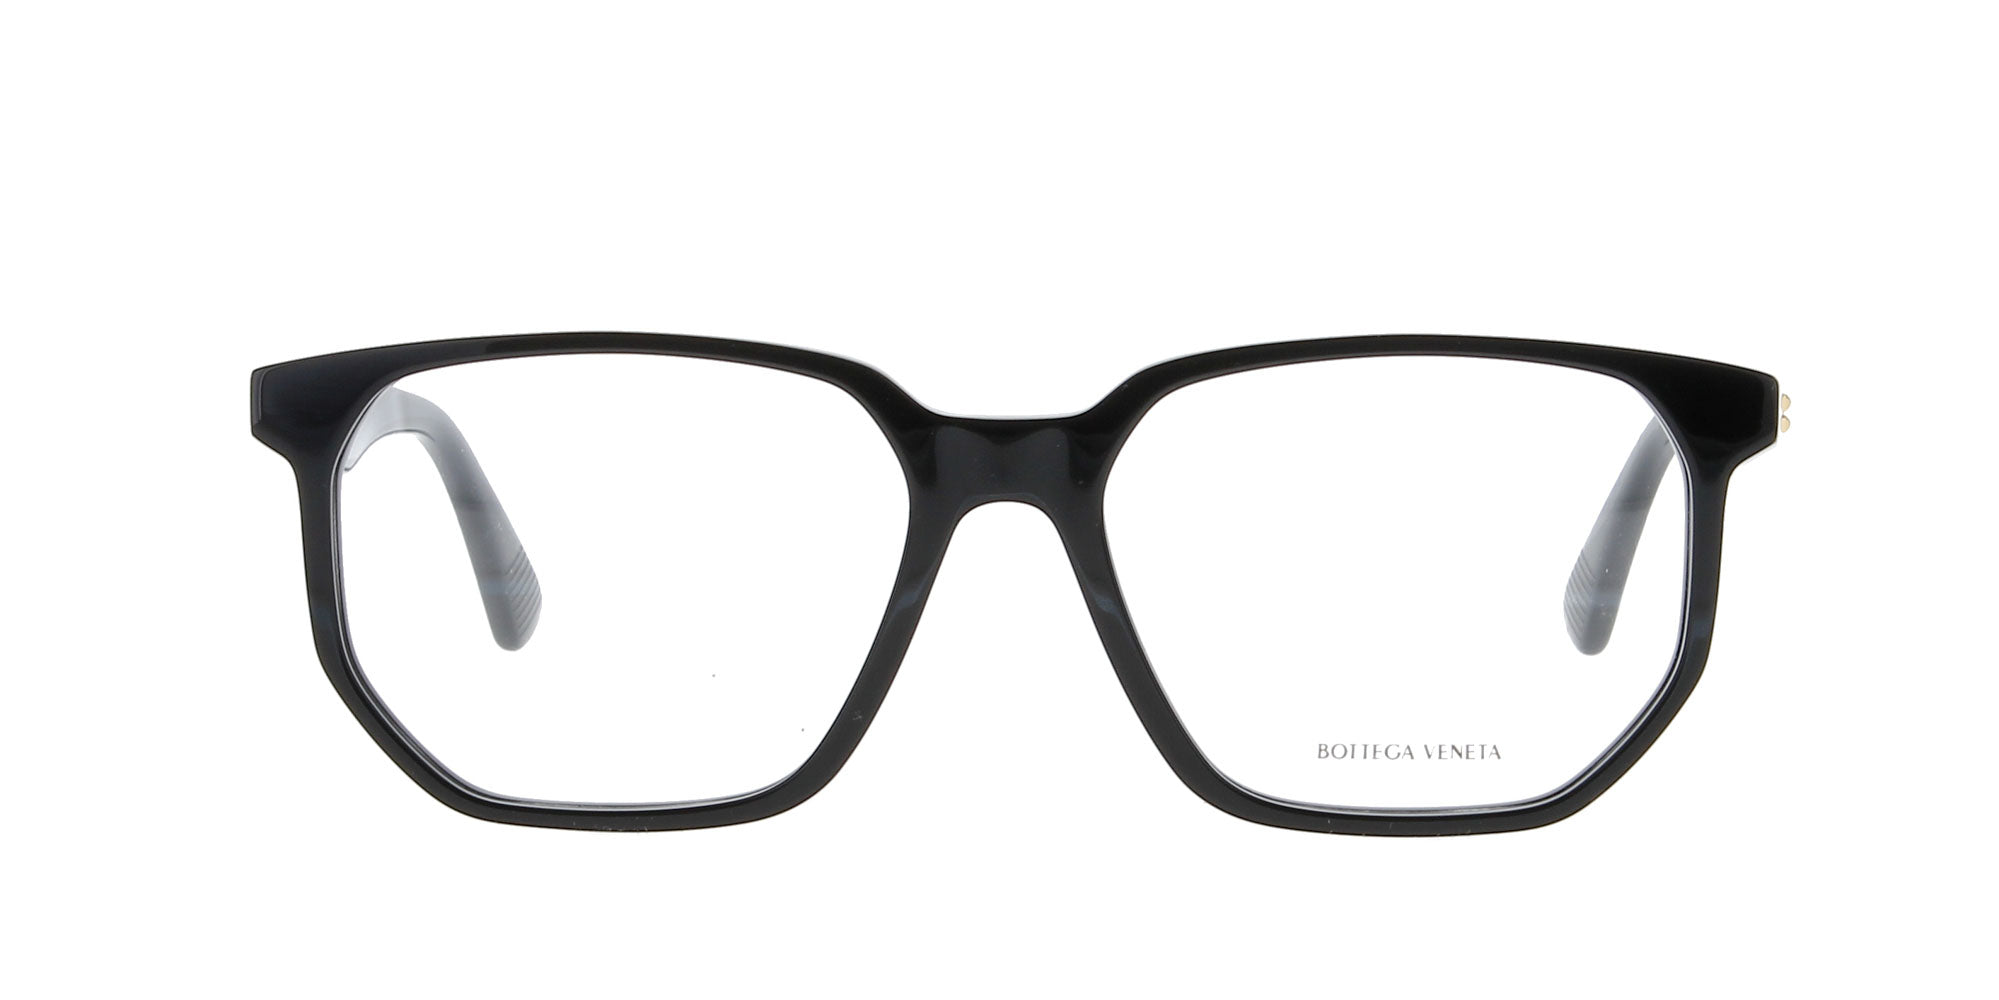 Find] Bottega Veneta glasses : r/FashionReps